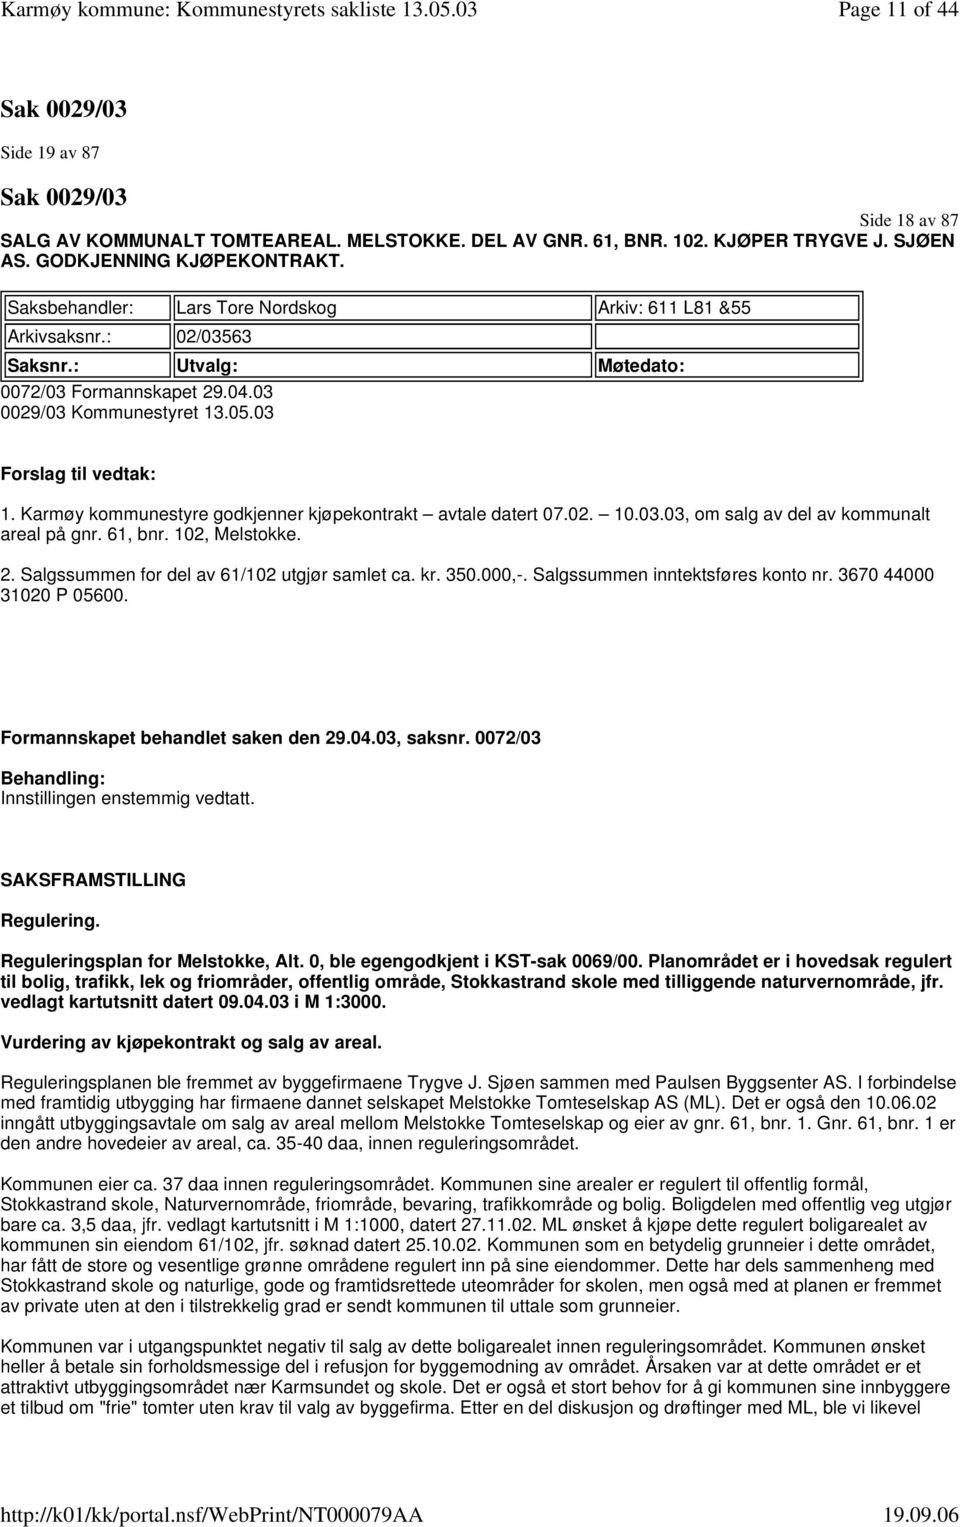 Karmøy kommunestyre godkjenner kjøpekontrakt avtale datert 07.02. 10.03.03, om salg av del av kommunalt areal på gnr. 61, bnr. 102, Melstokke. 2. Salgssummen for del av 61/102 utgjør samlet ca. kr.